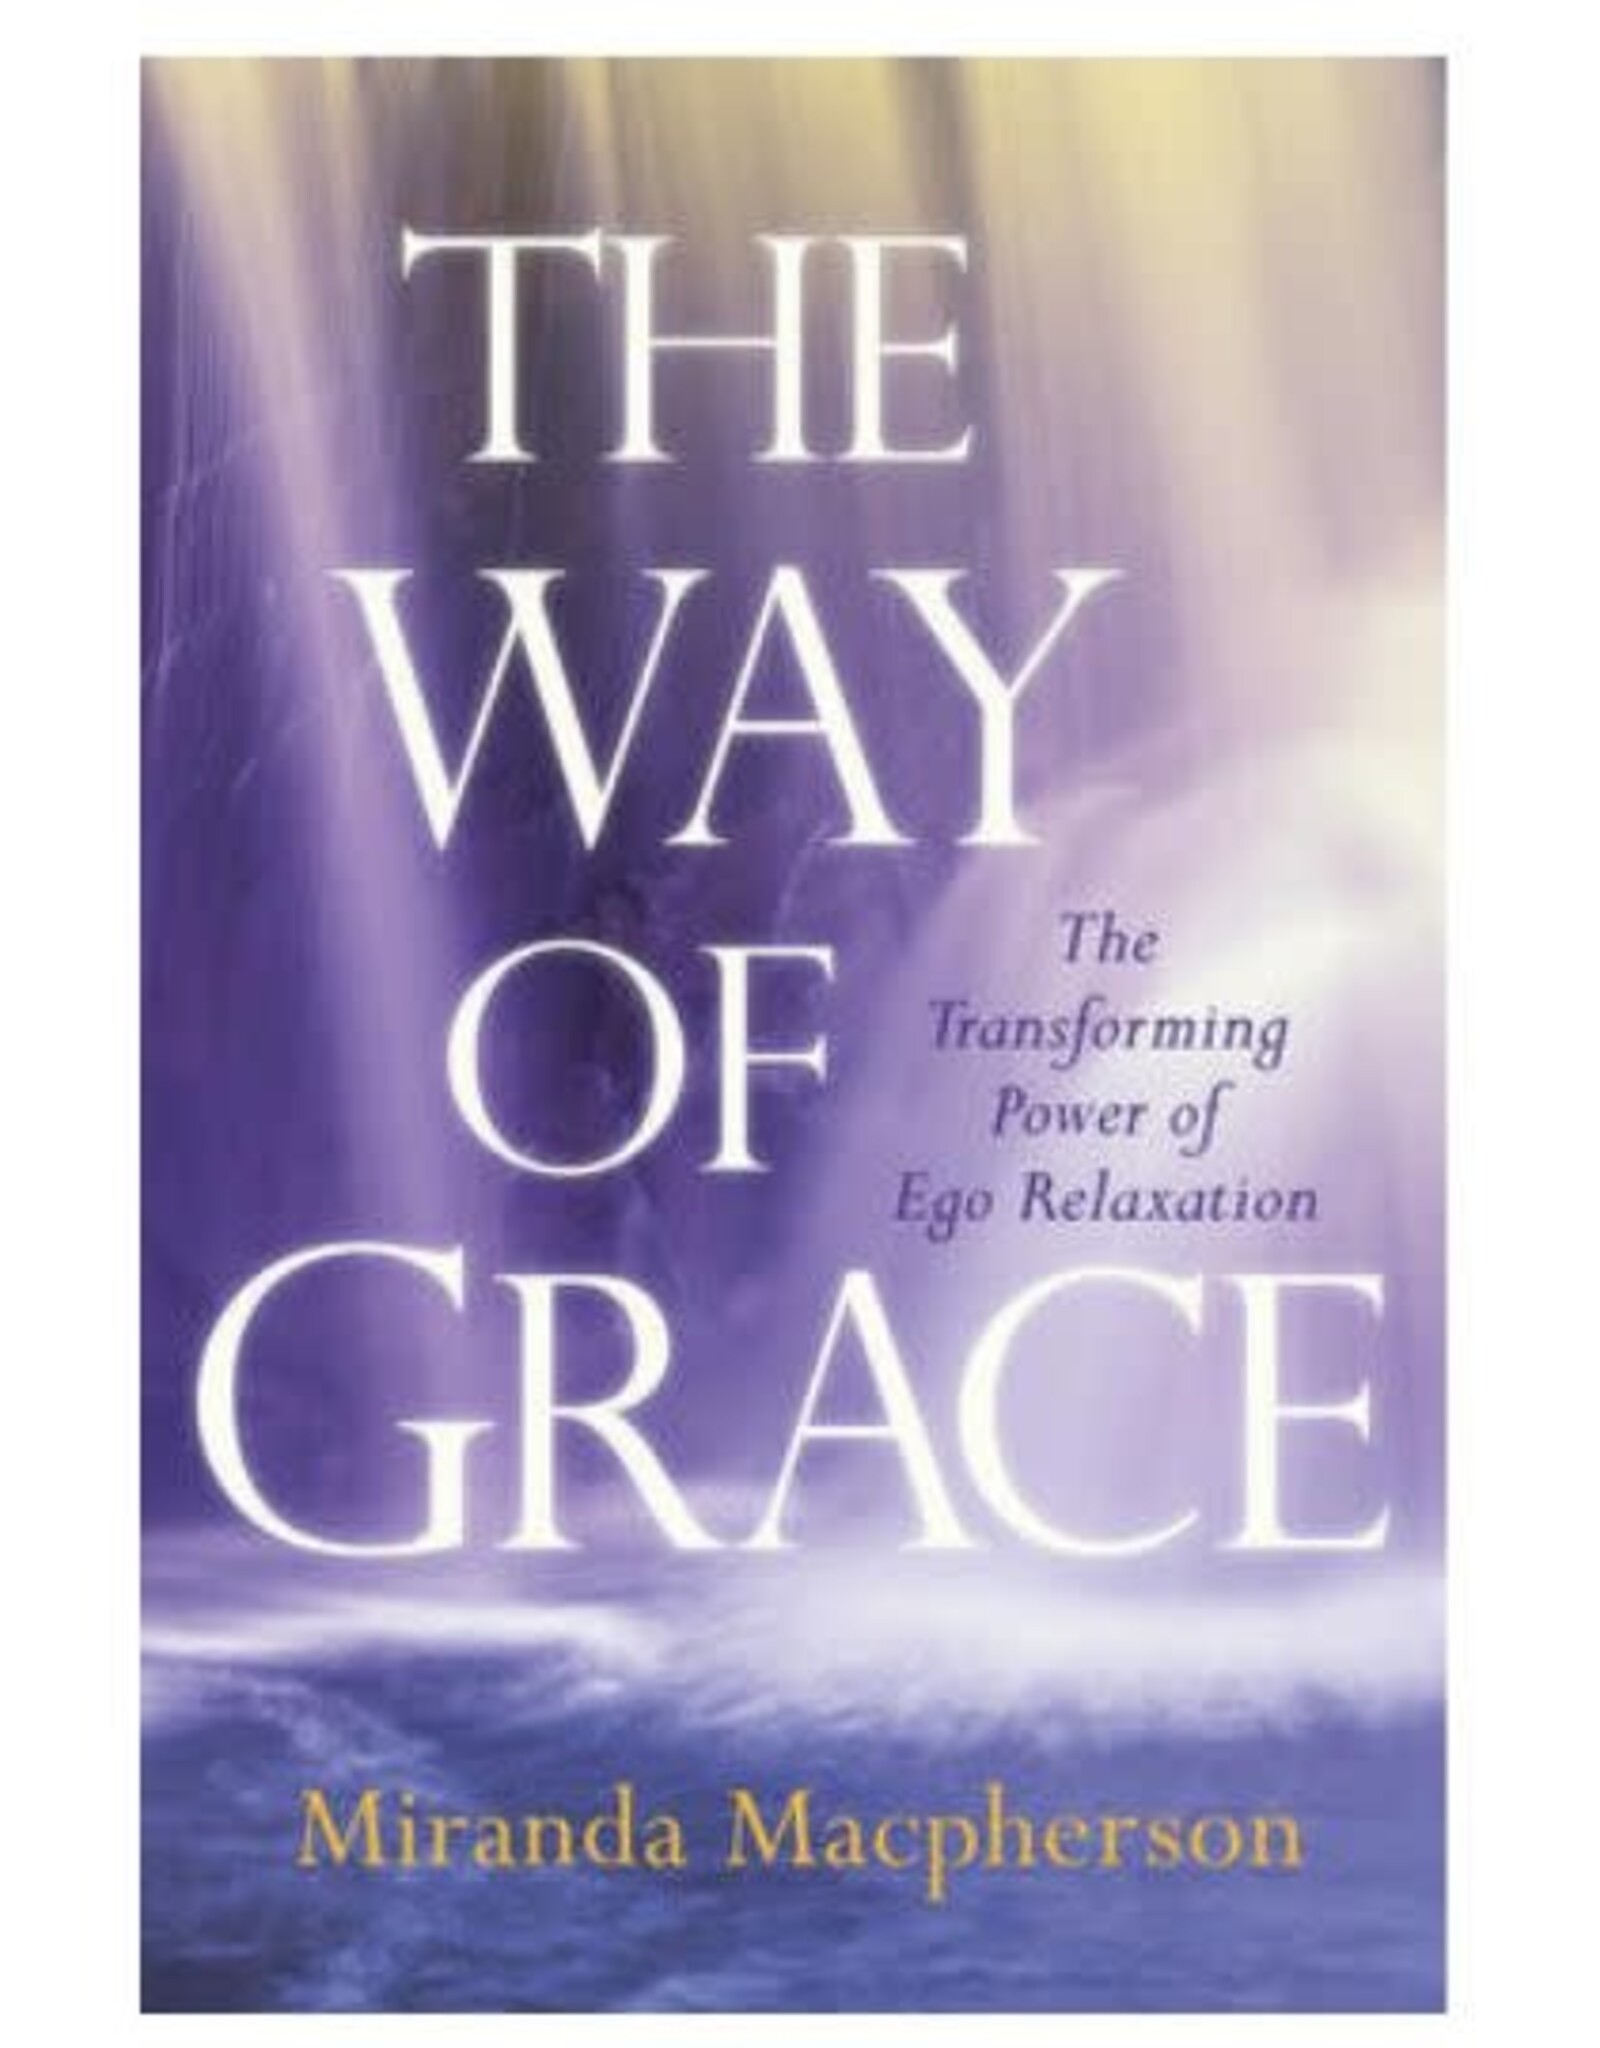 Way of Grace by Miranda Macpherson